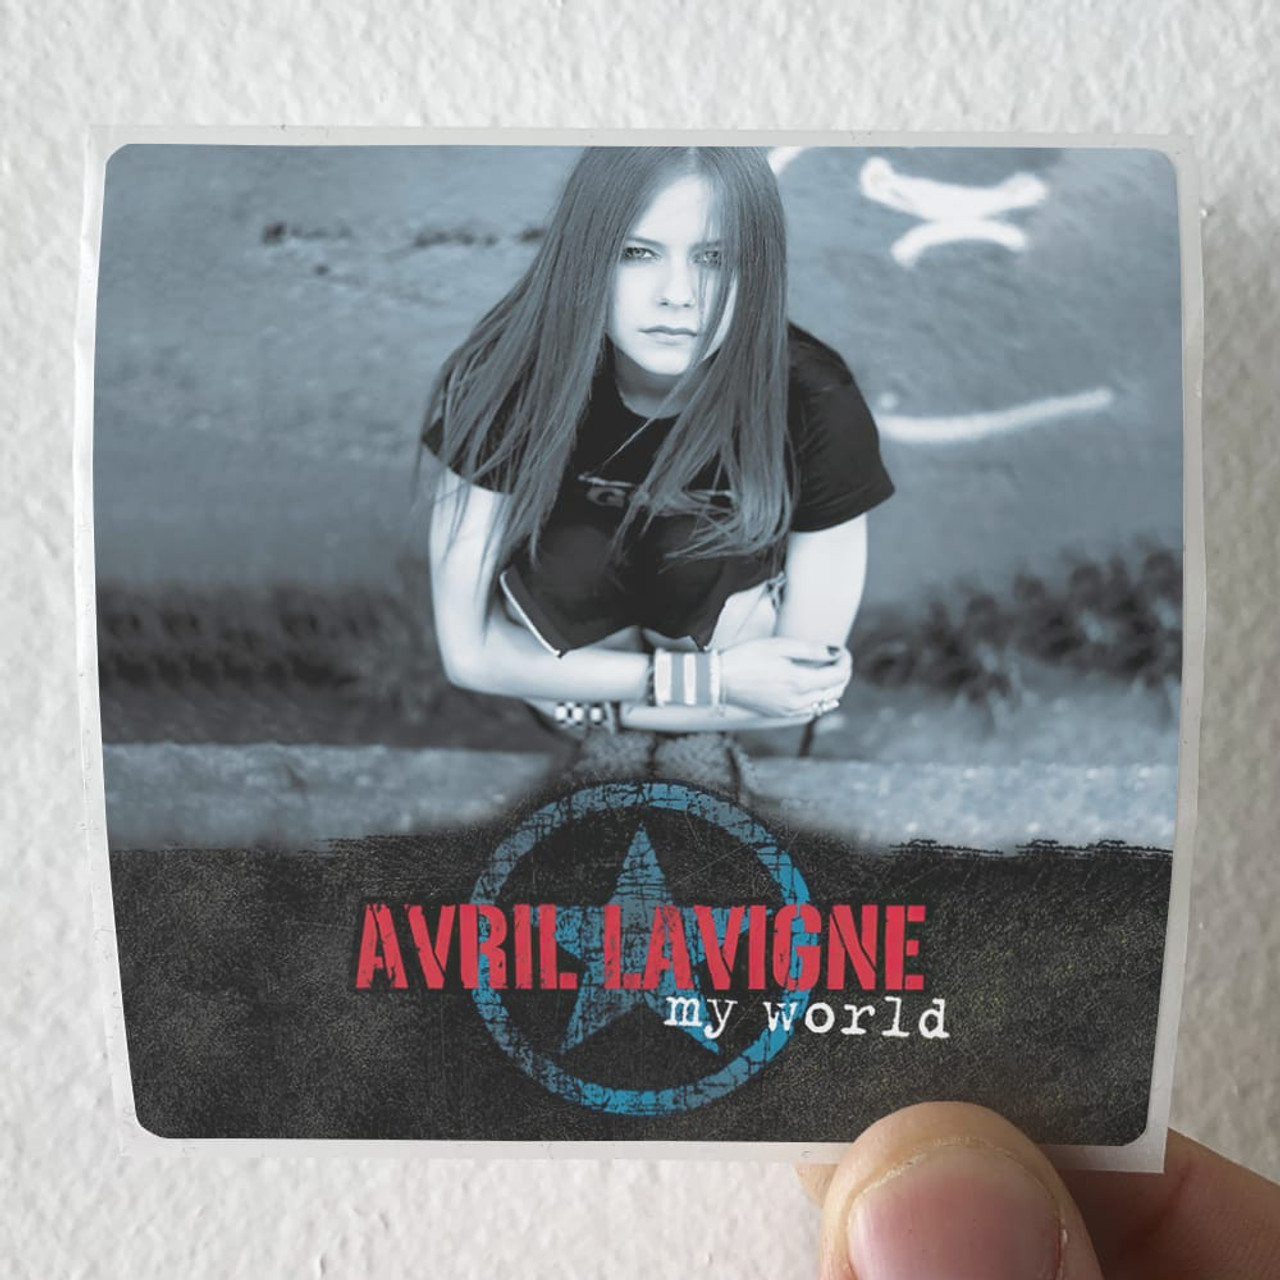  Avril Lavigne: CDs & Vinyl